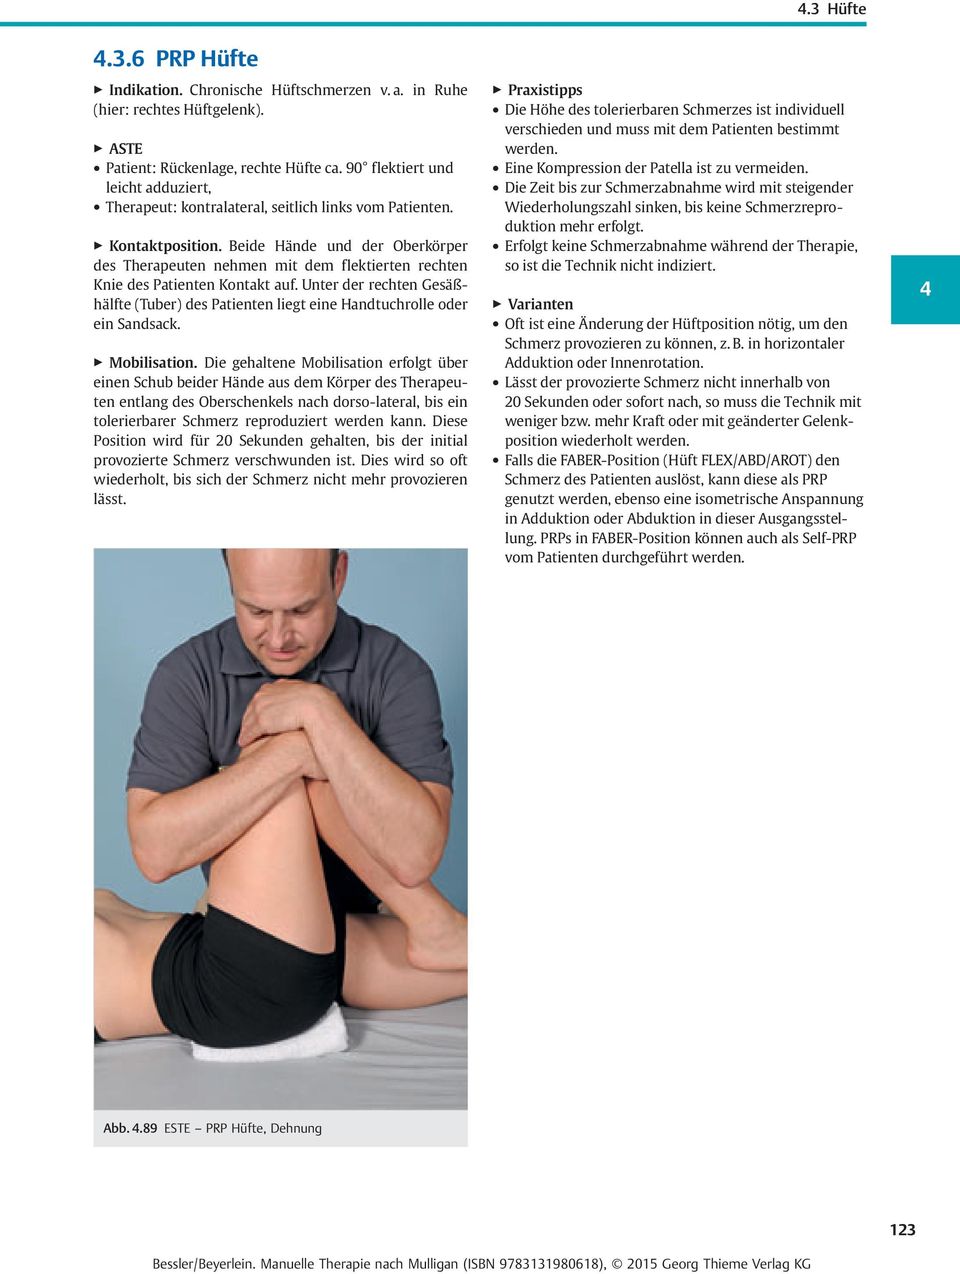 Beide Hände und der Oberkörper des Therapeuten nehmen mit dem flektierten rechten Knie des Patienten Kontakt auf.